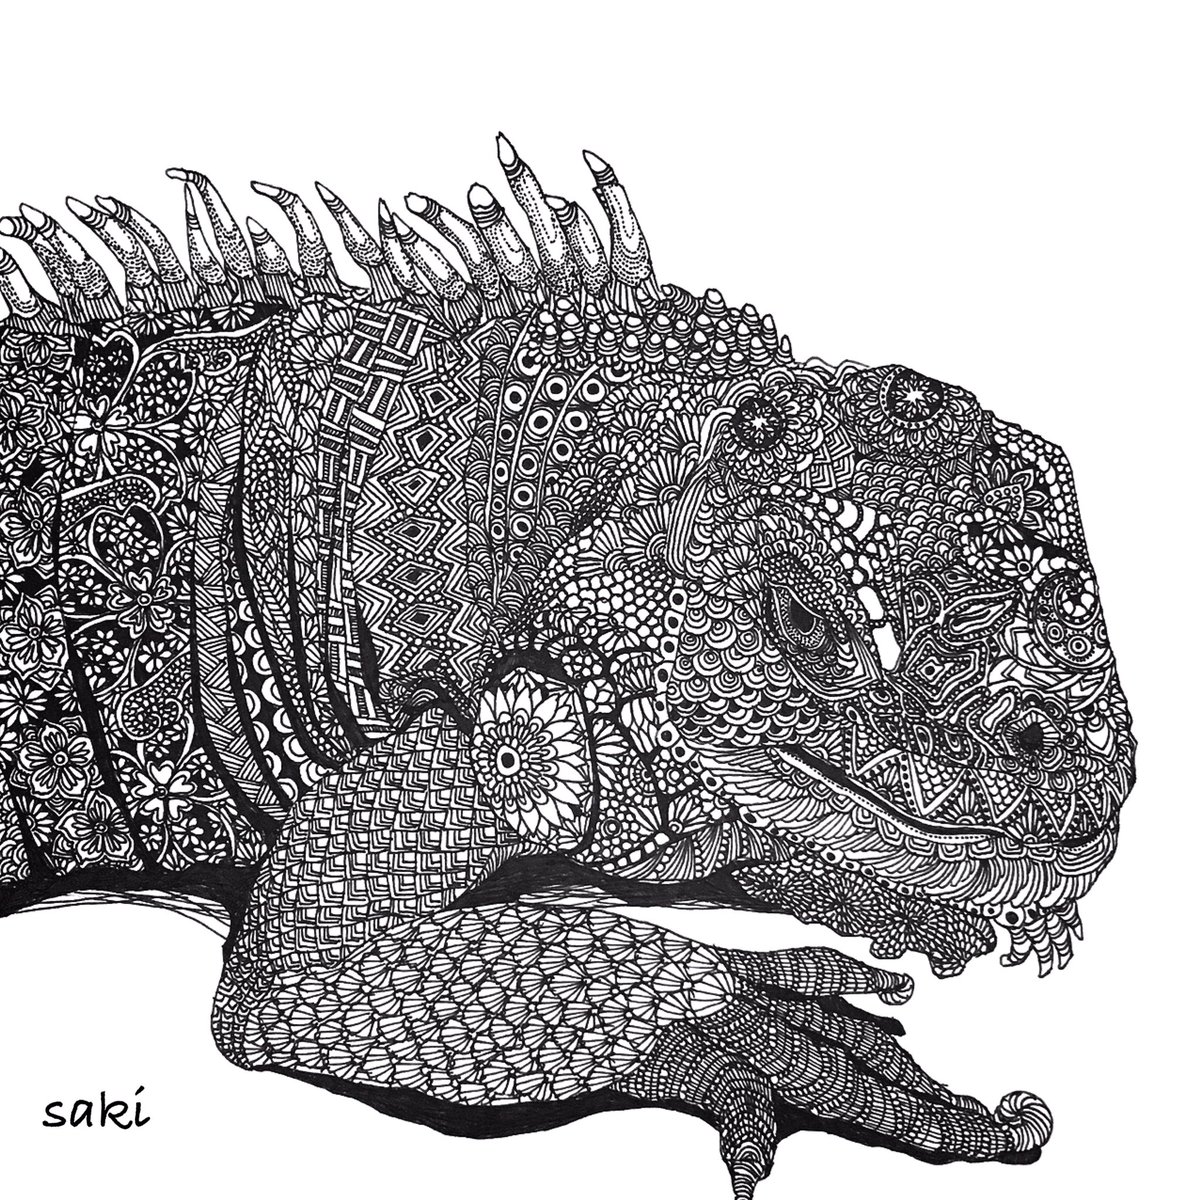 트위터의 Saki ボールペン画アーティスト 님 イグアナさん T Co Xzoyr1rtgu イラスト 爬虫類 イグアナ Illustration Reptile Iguana